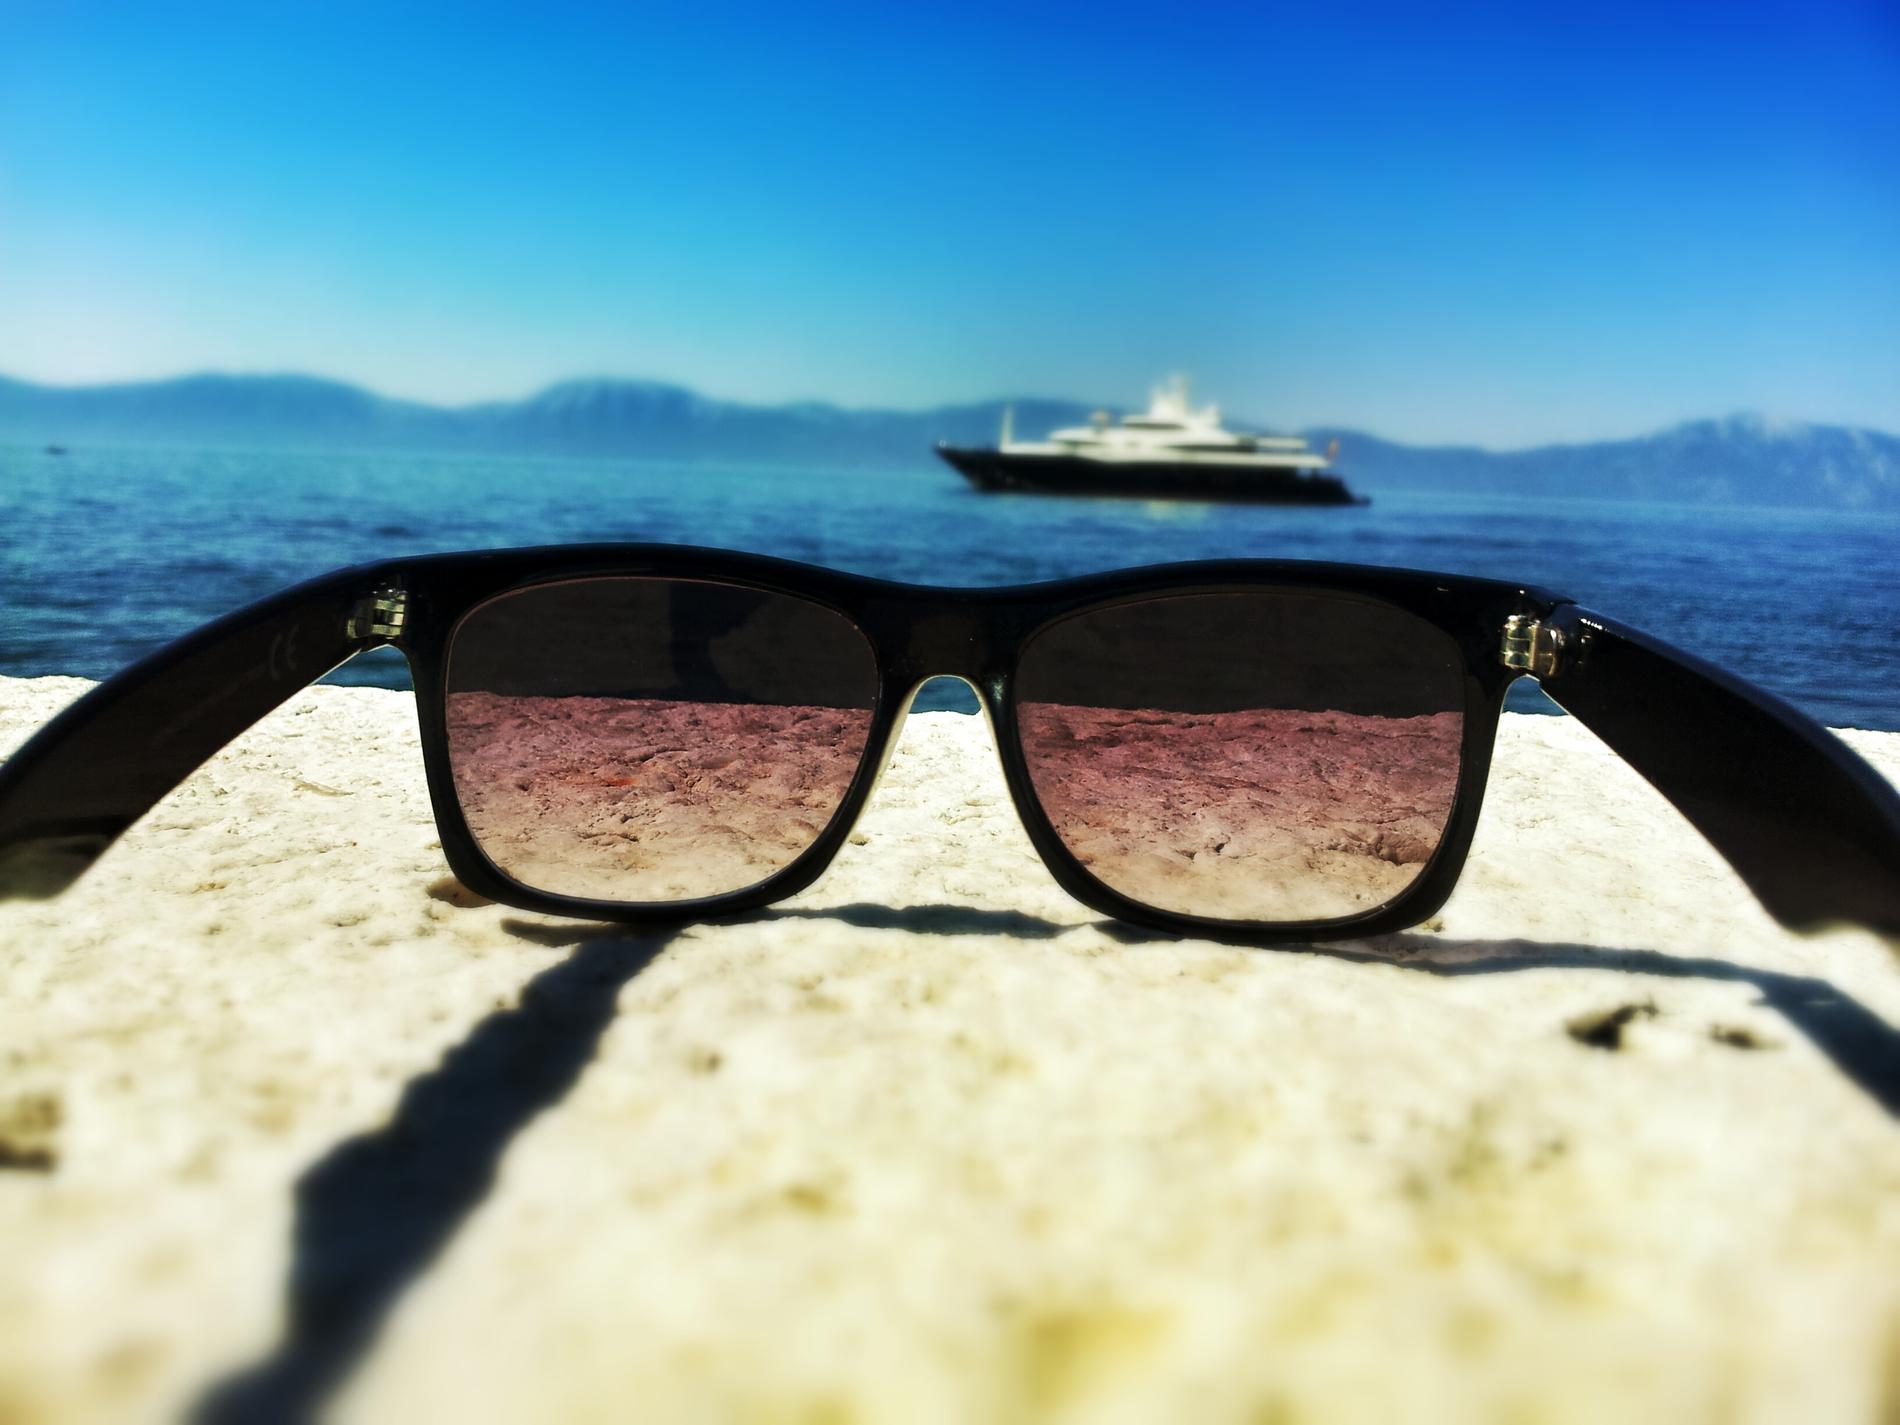 Teo tog en bild på brillorna och en yacht i bakgrunden, i Kroatien.